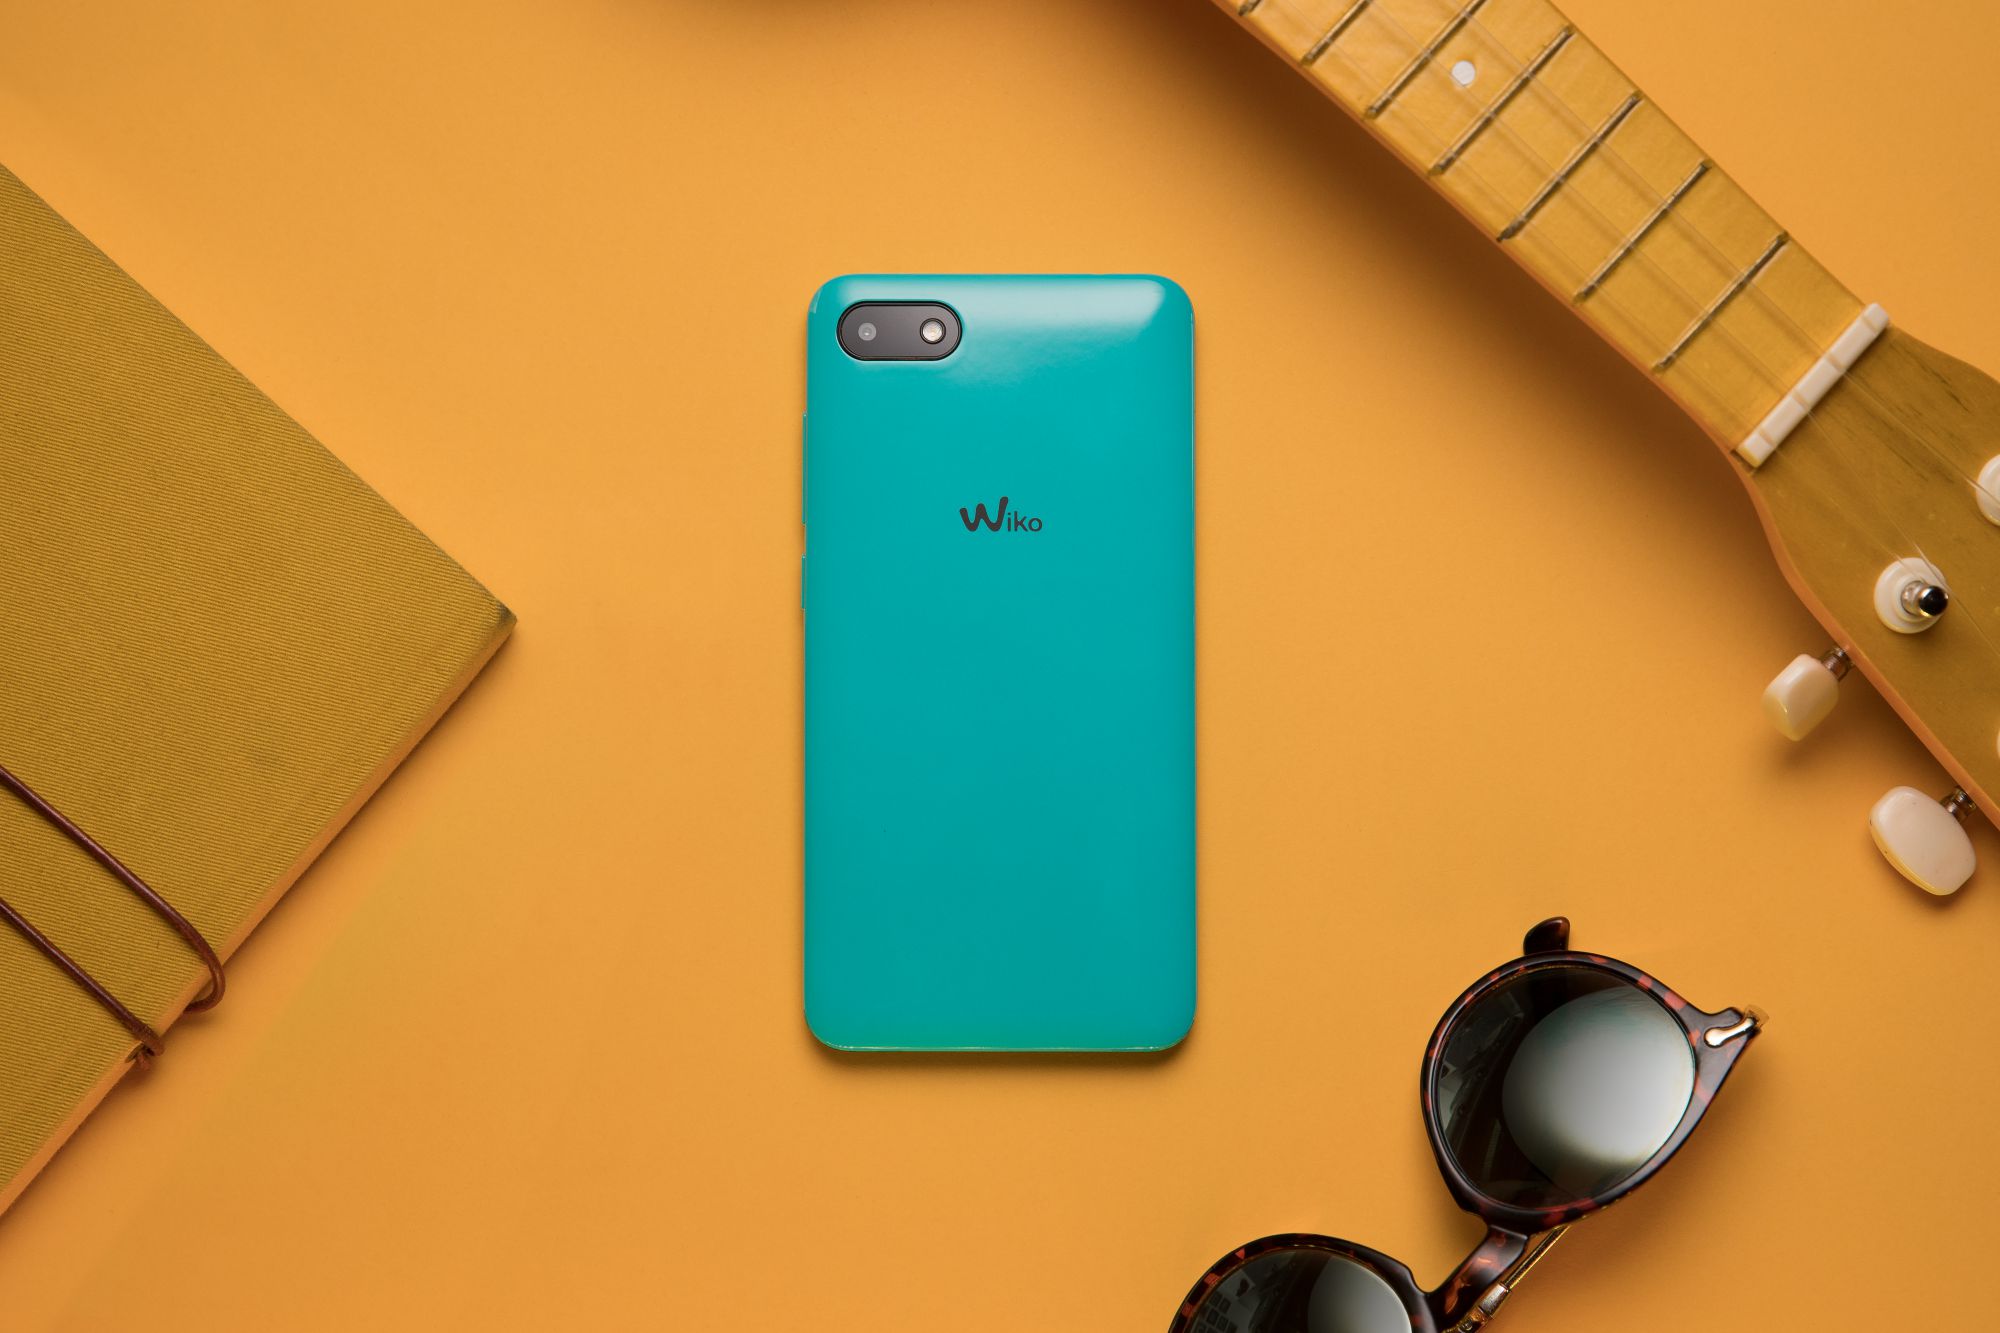 Sunny3 y Sunny3 Mini, los nuevos smartphones de Wiko tan básicos como baratos